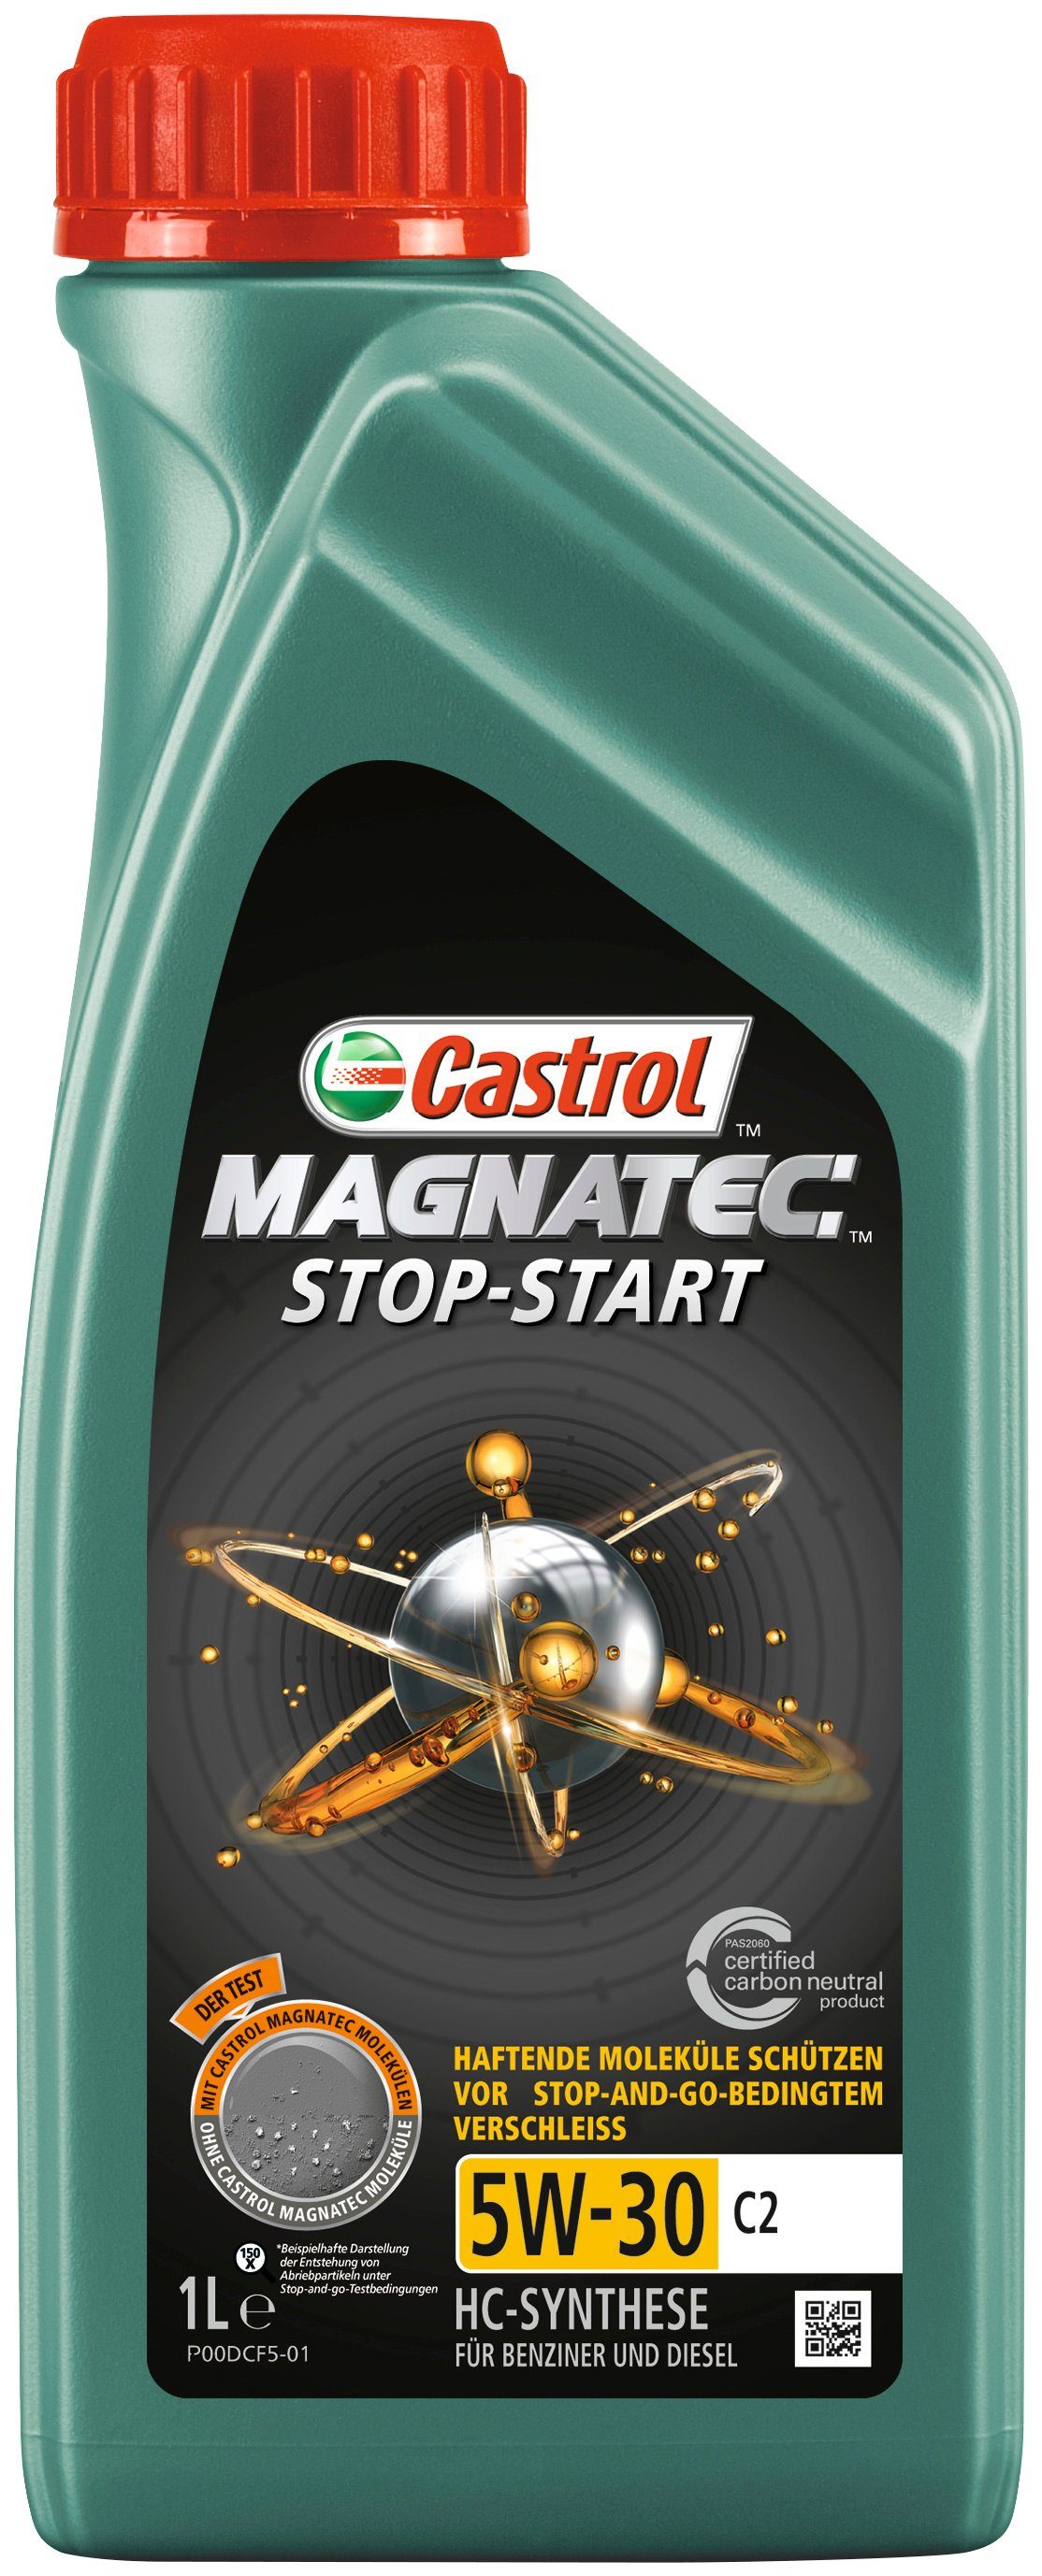 Stop-Start Castrol 1 Liter, für C2, MAGNATEC 5W-30 PKW Motoröl